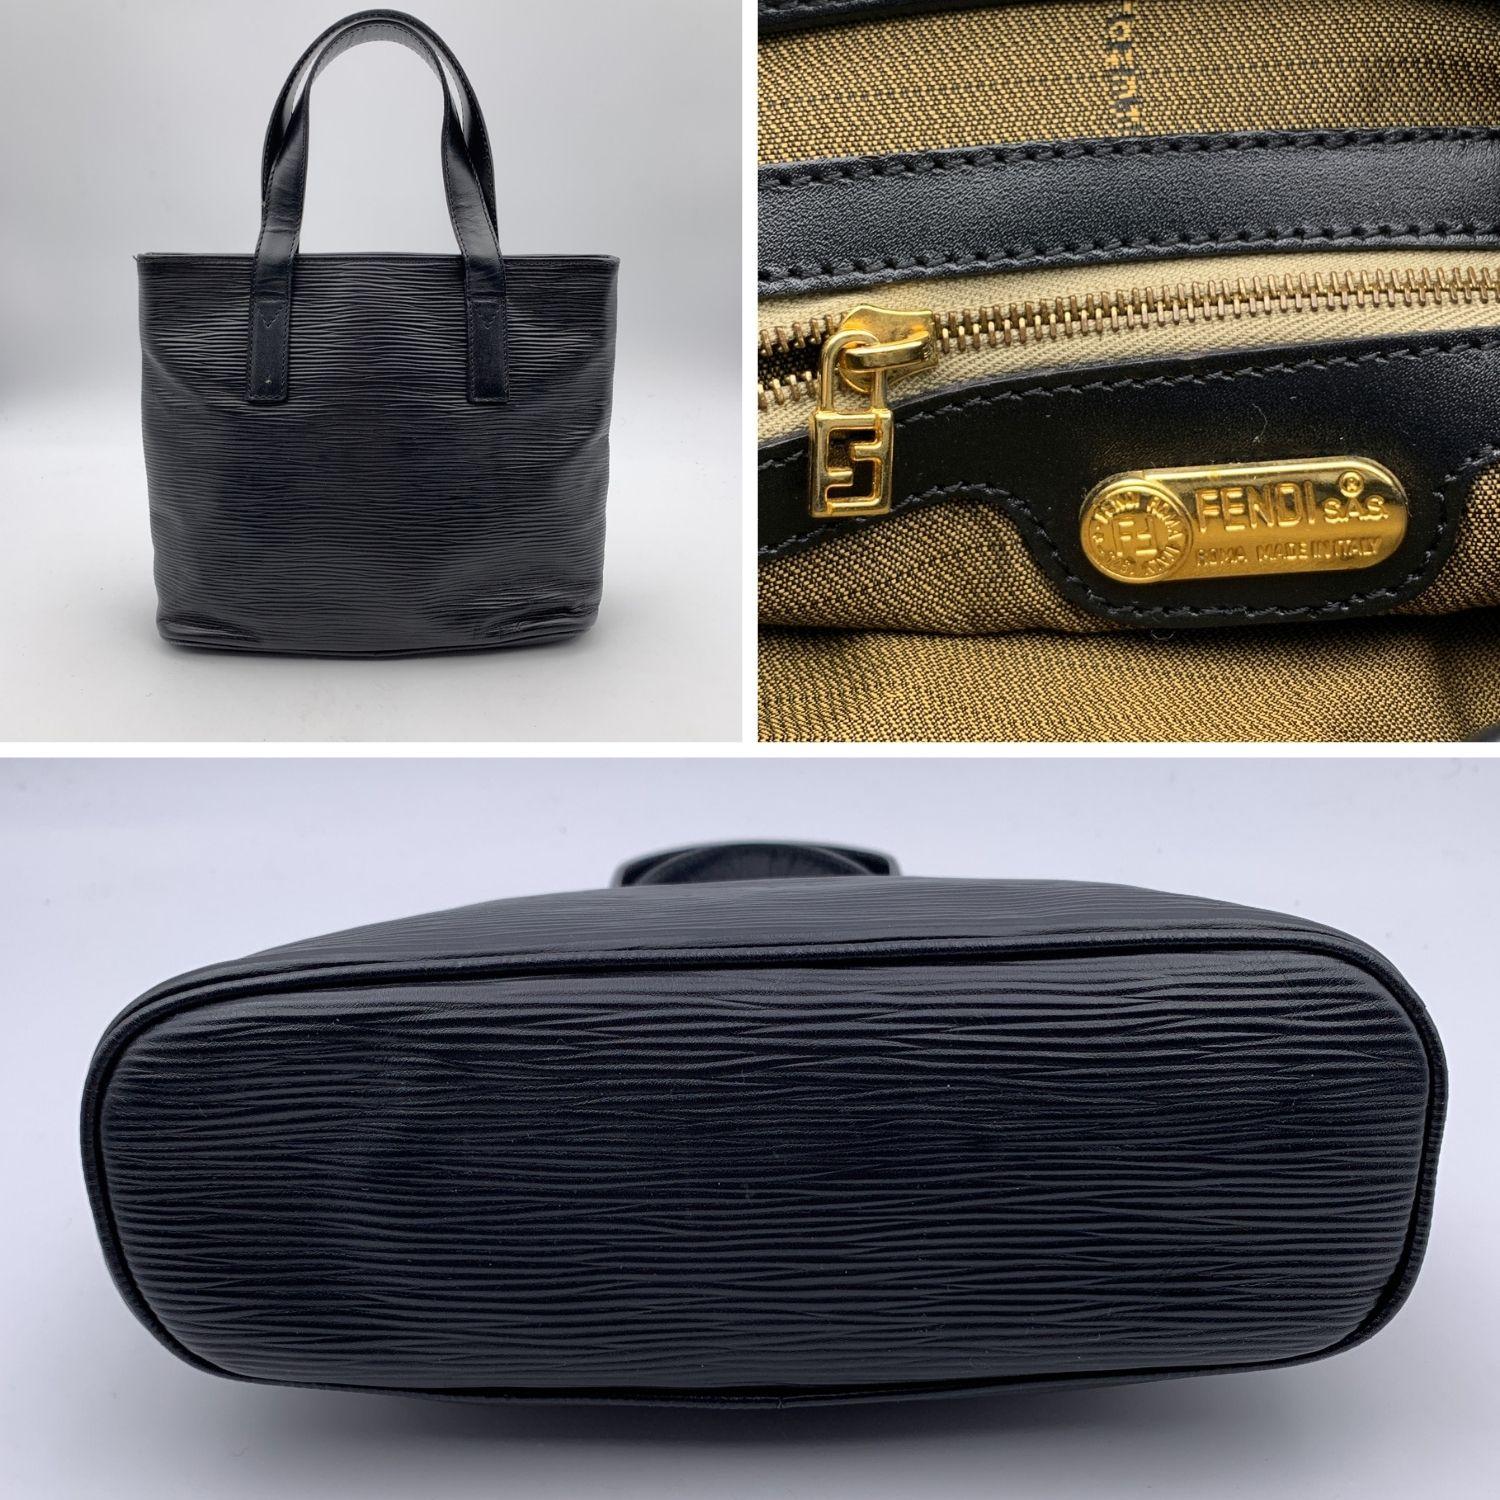 Fendi Vintage Black Textured Leather Small Tote Handbag 1